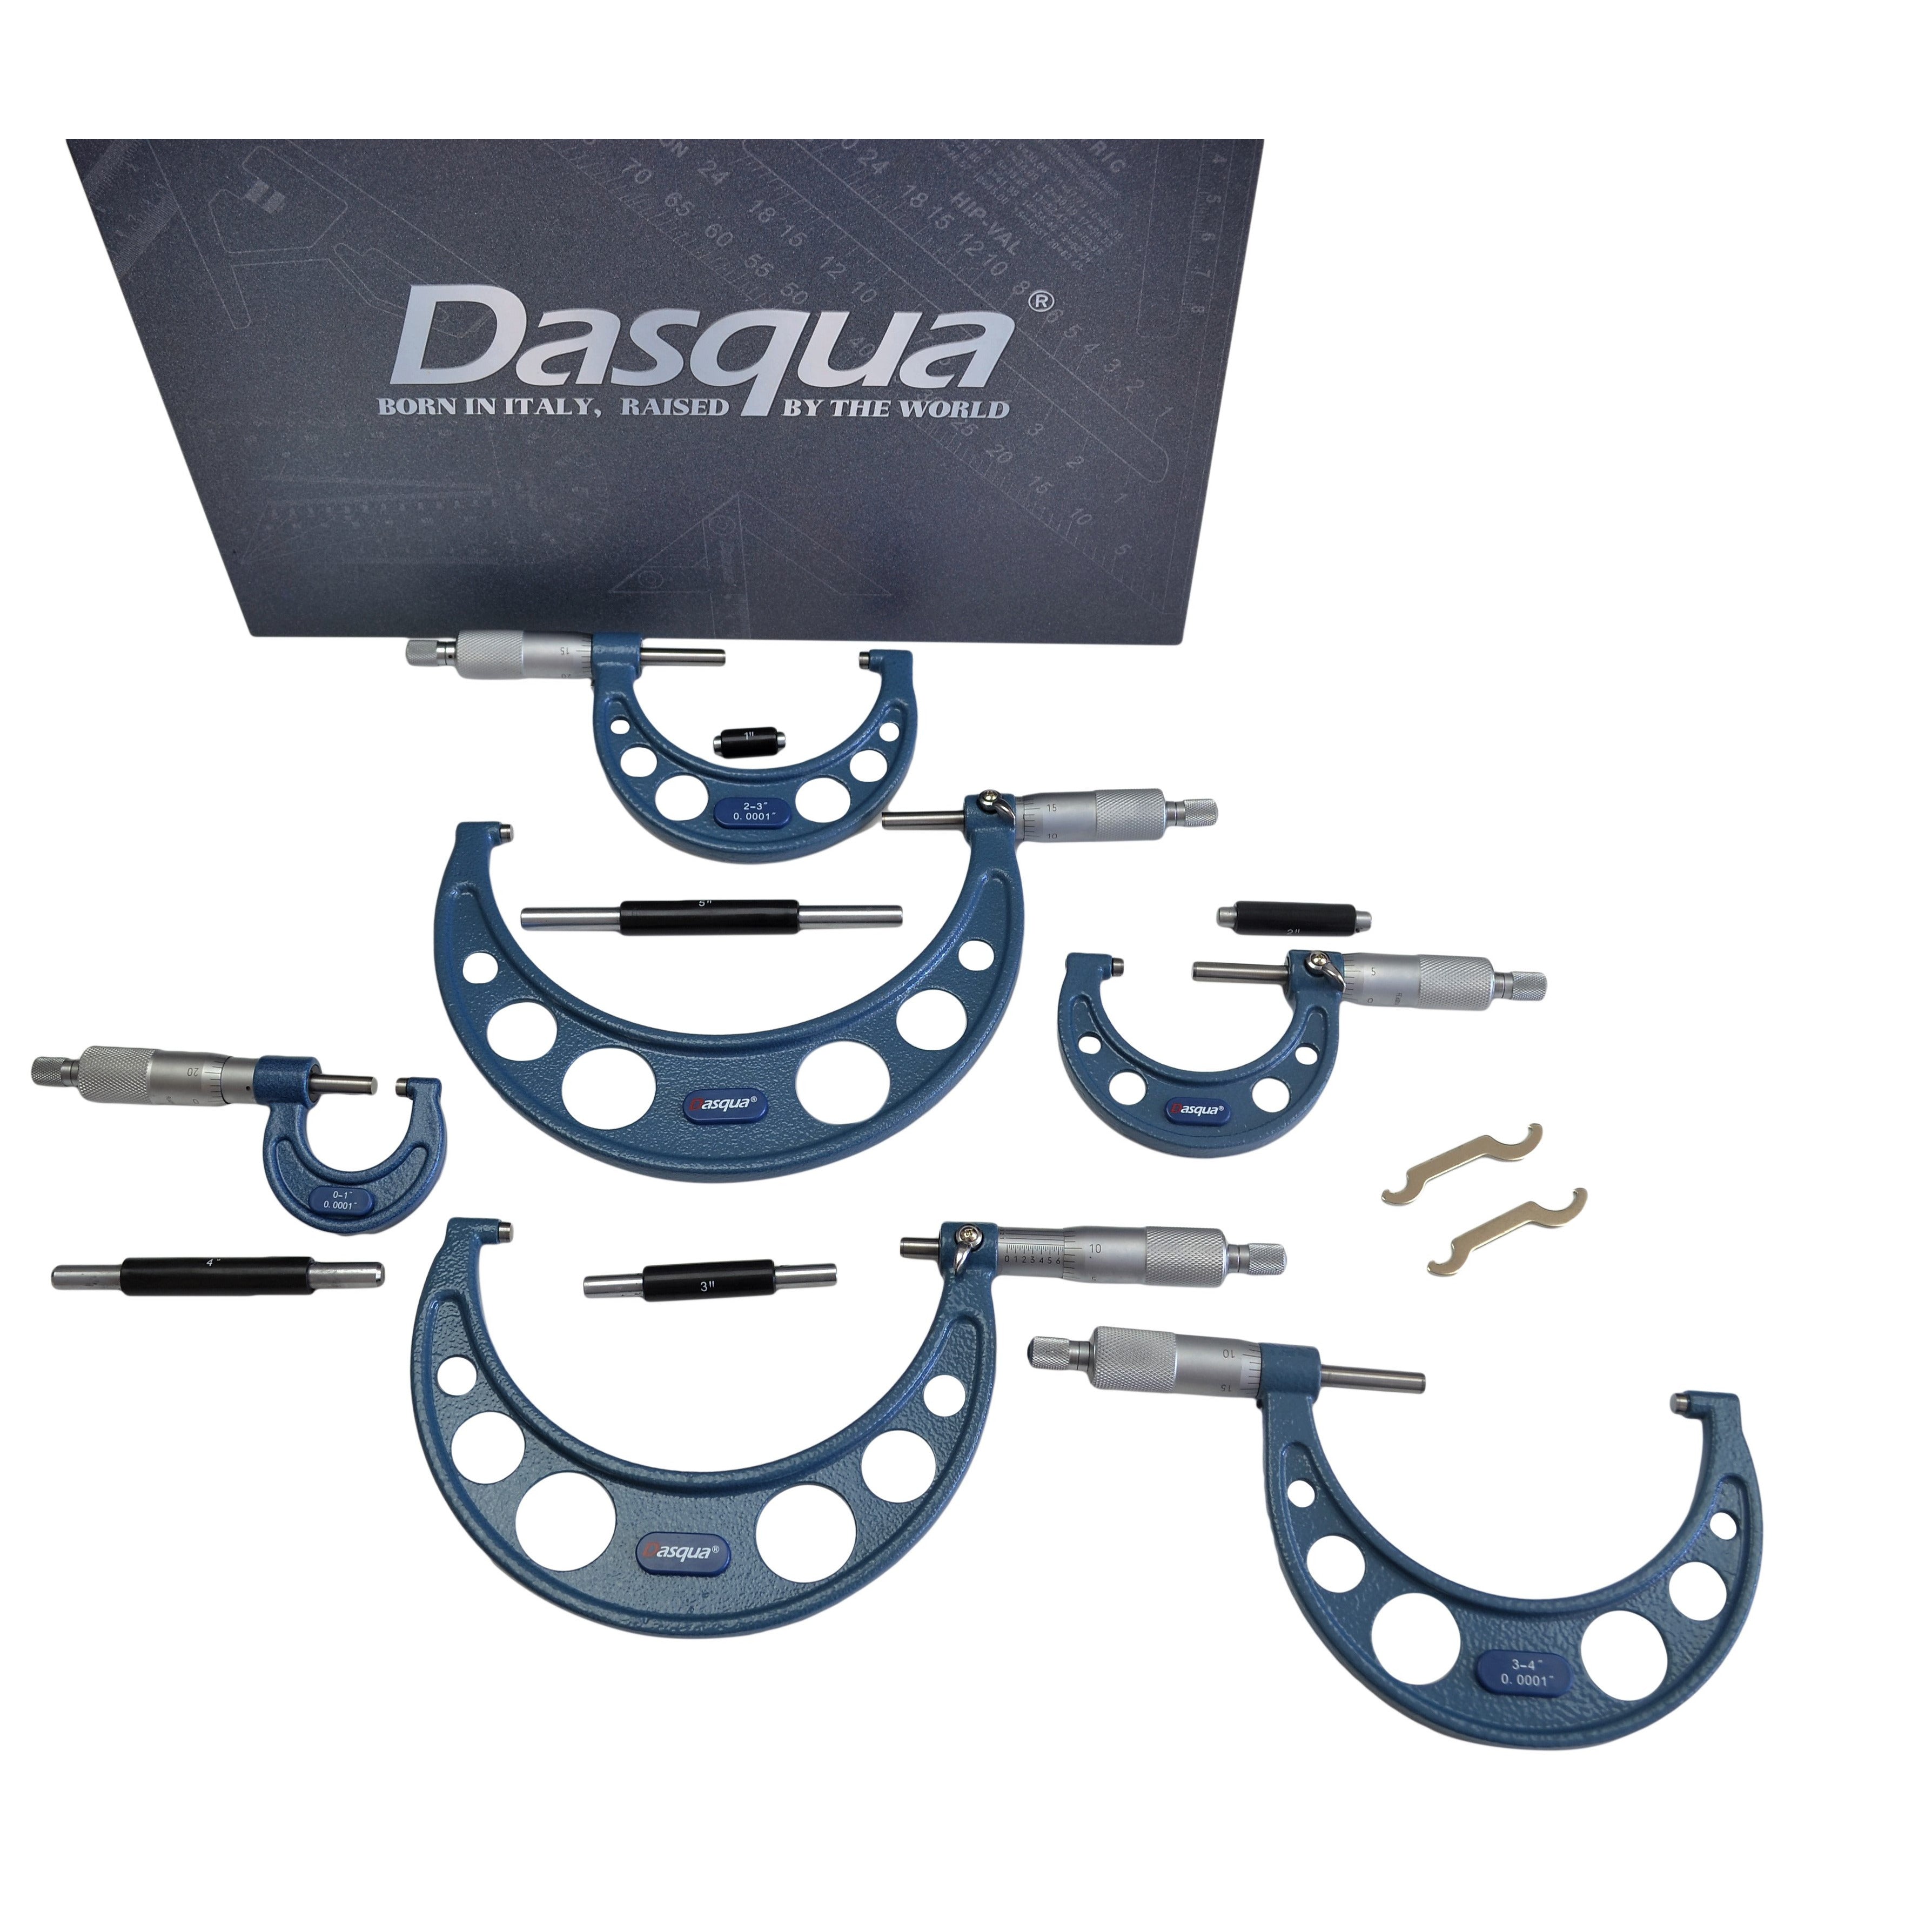 Dasqua  Part No 4112-0215 6 piece Outside micrometer set Imperial Graduation